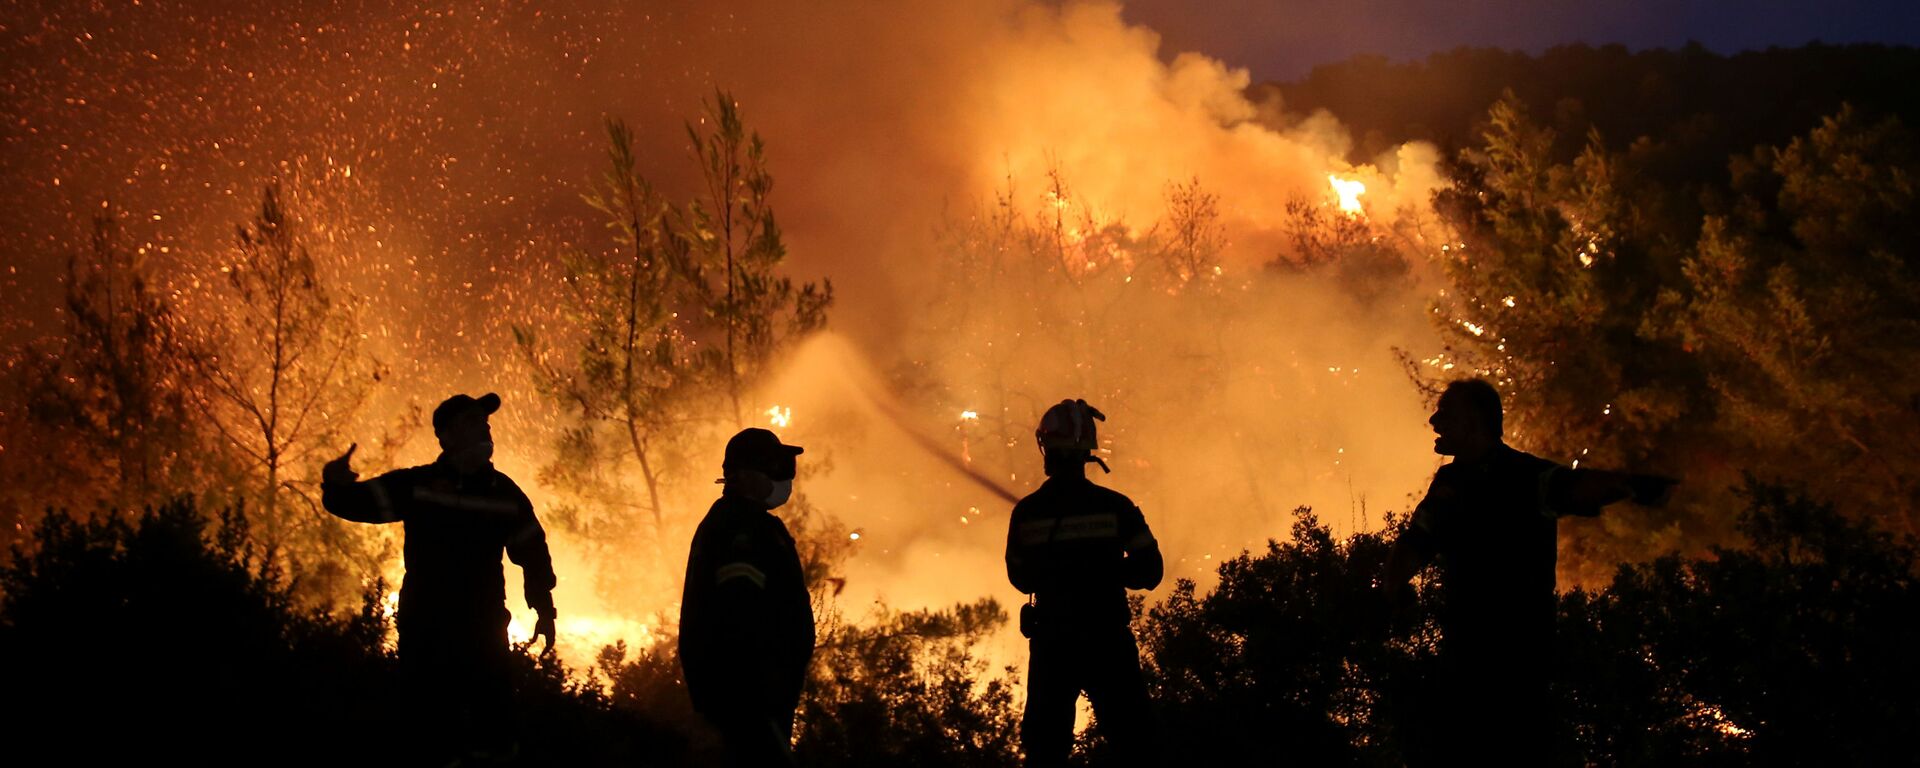 Pompierii încearcă să stingă un incendiu de vegetație în apropierea satului Makrimalli de pe insula Evia, Grecia - Sputnik Moldova, 1920, 24.06.2020